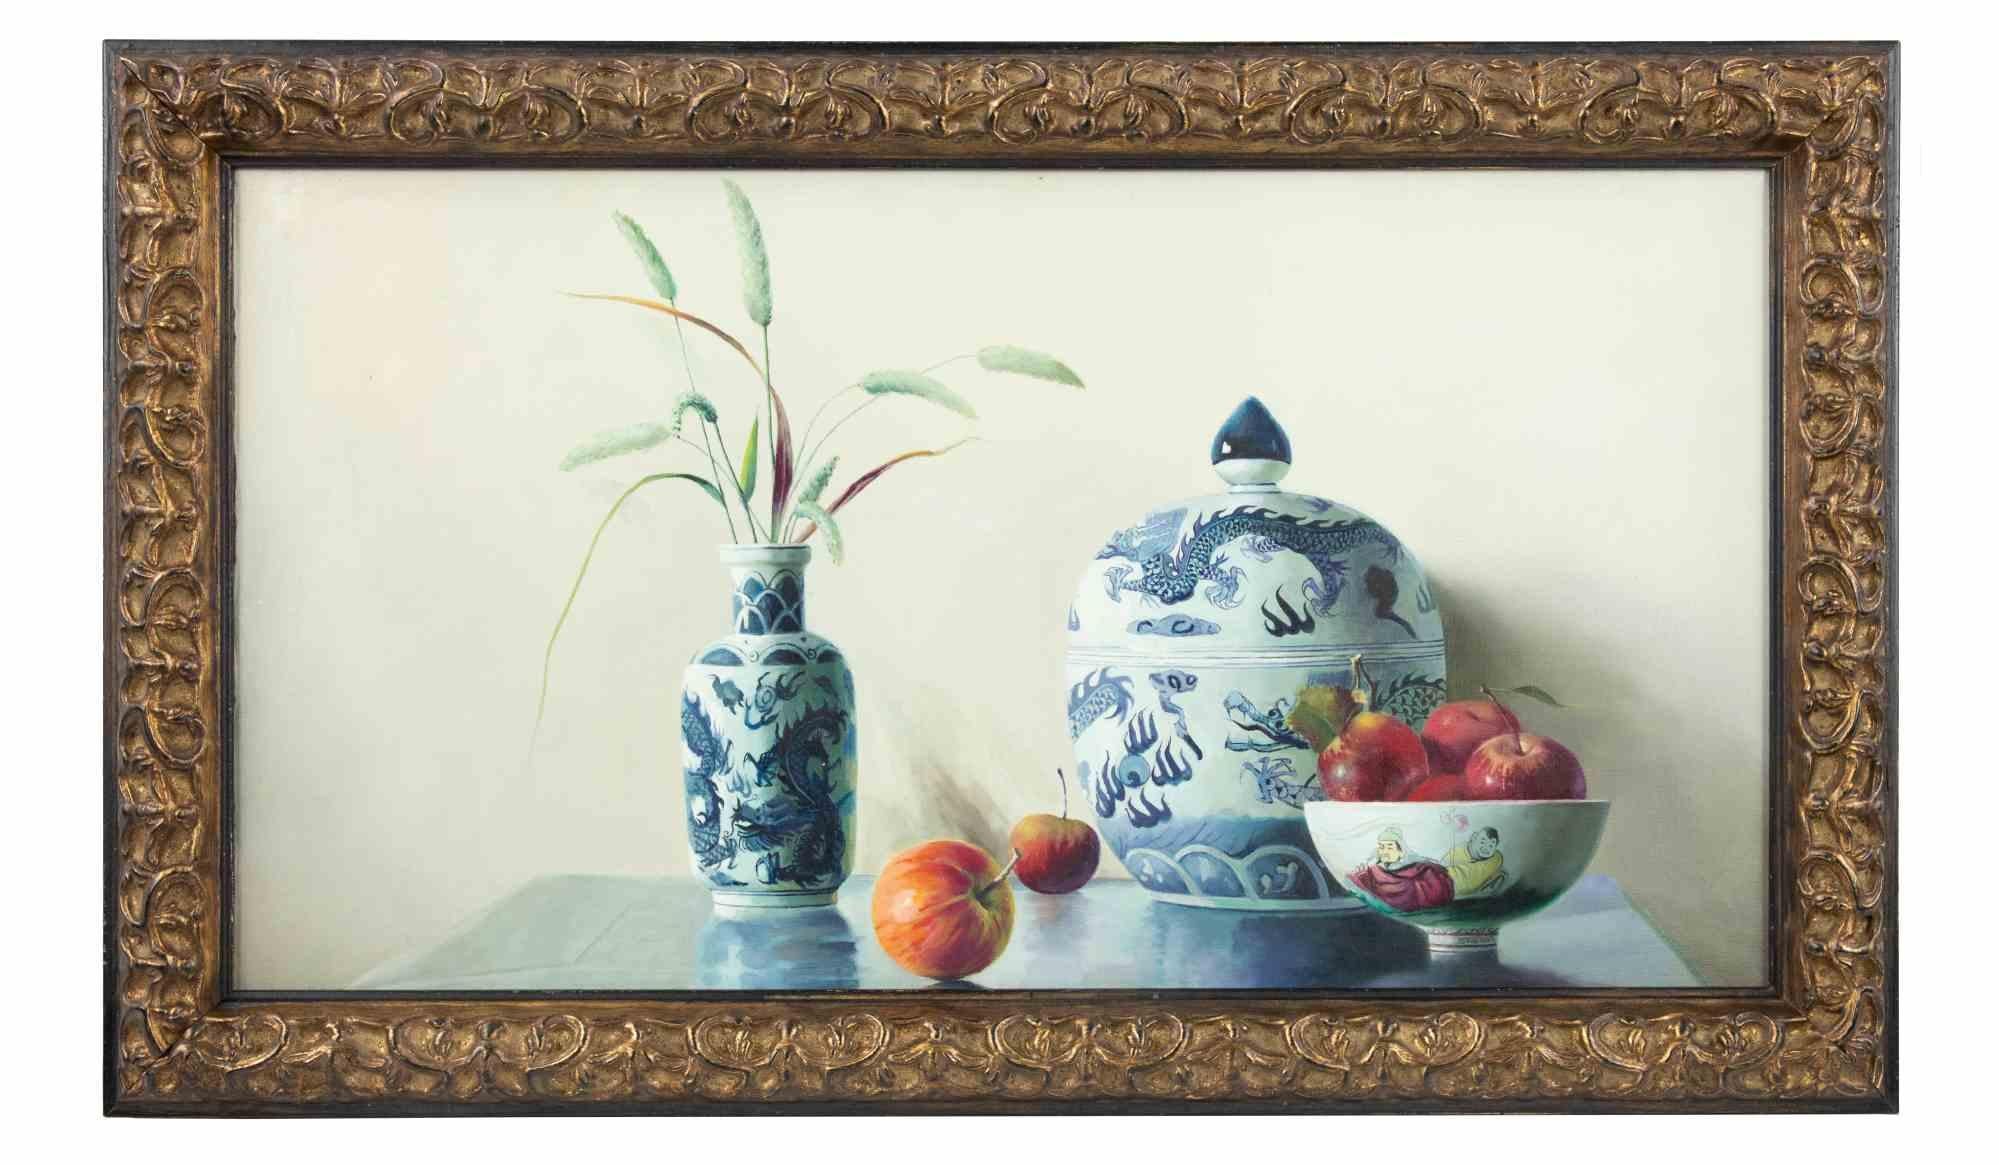 Vasen und Früchte ist ein Original-Ölgemälde aus dem Jahr 2006 von Zhang Wei Guang (Spiegel).

Schönes Ölgemälde auf Leinwand. 

Einschließlich Rahmen.

Handsigniert und datiert auf der Rückseite

Zhang Wei Guang , auch "Spiegel" genannt, wurde 1968